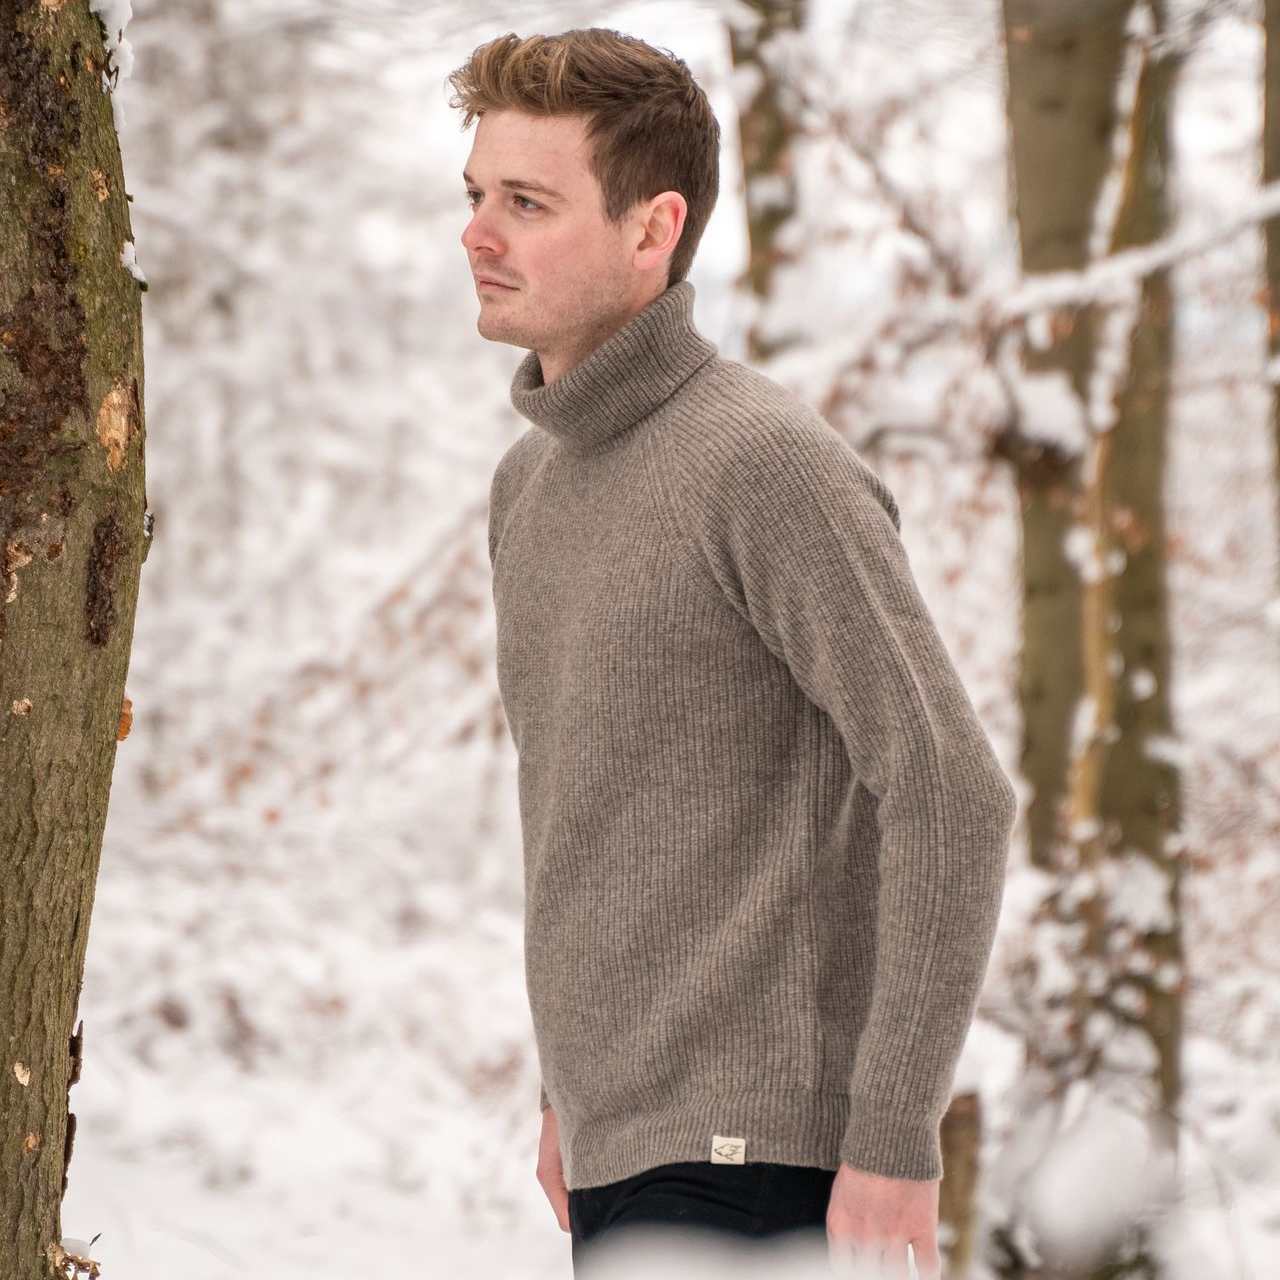 Ein Mann trägt einen grauen Rollkragenpullover und läuft durch Schnee im Wald